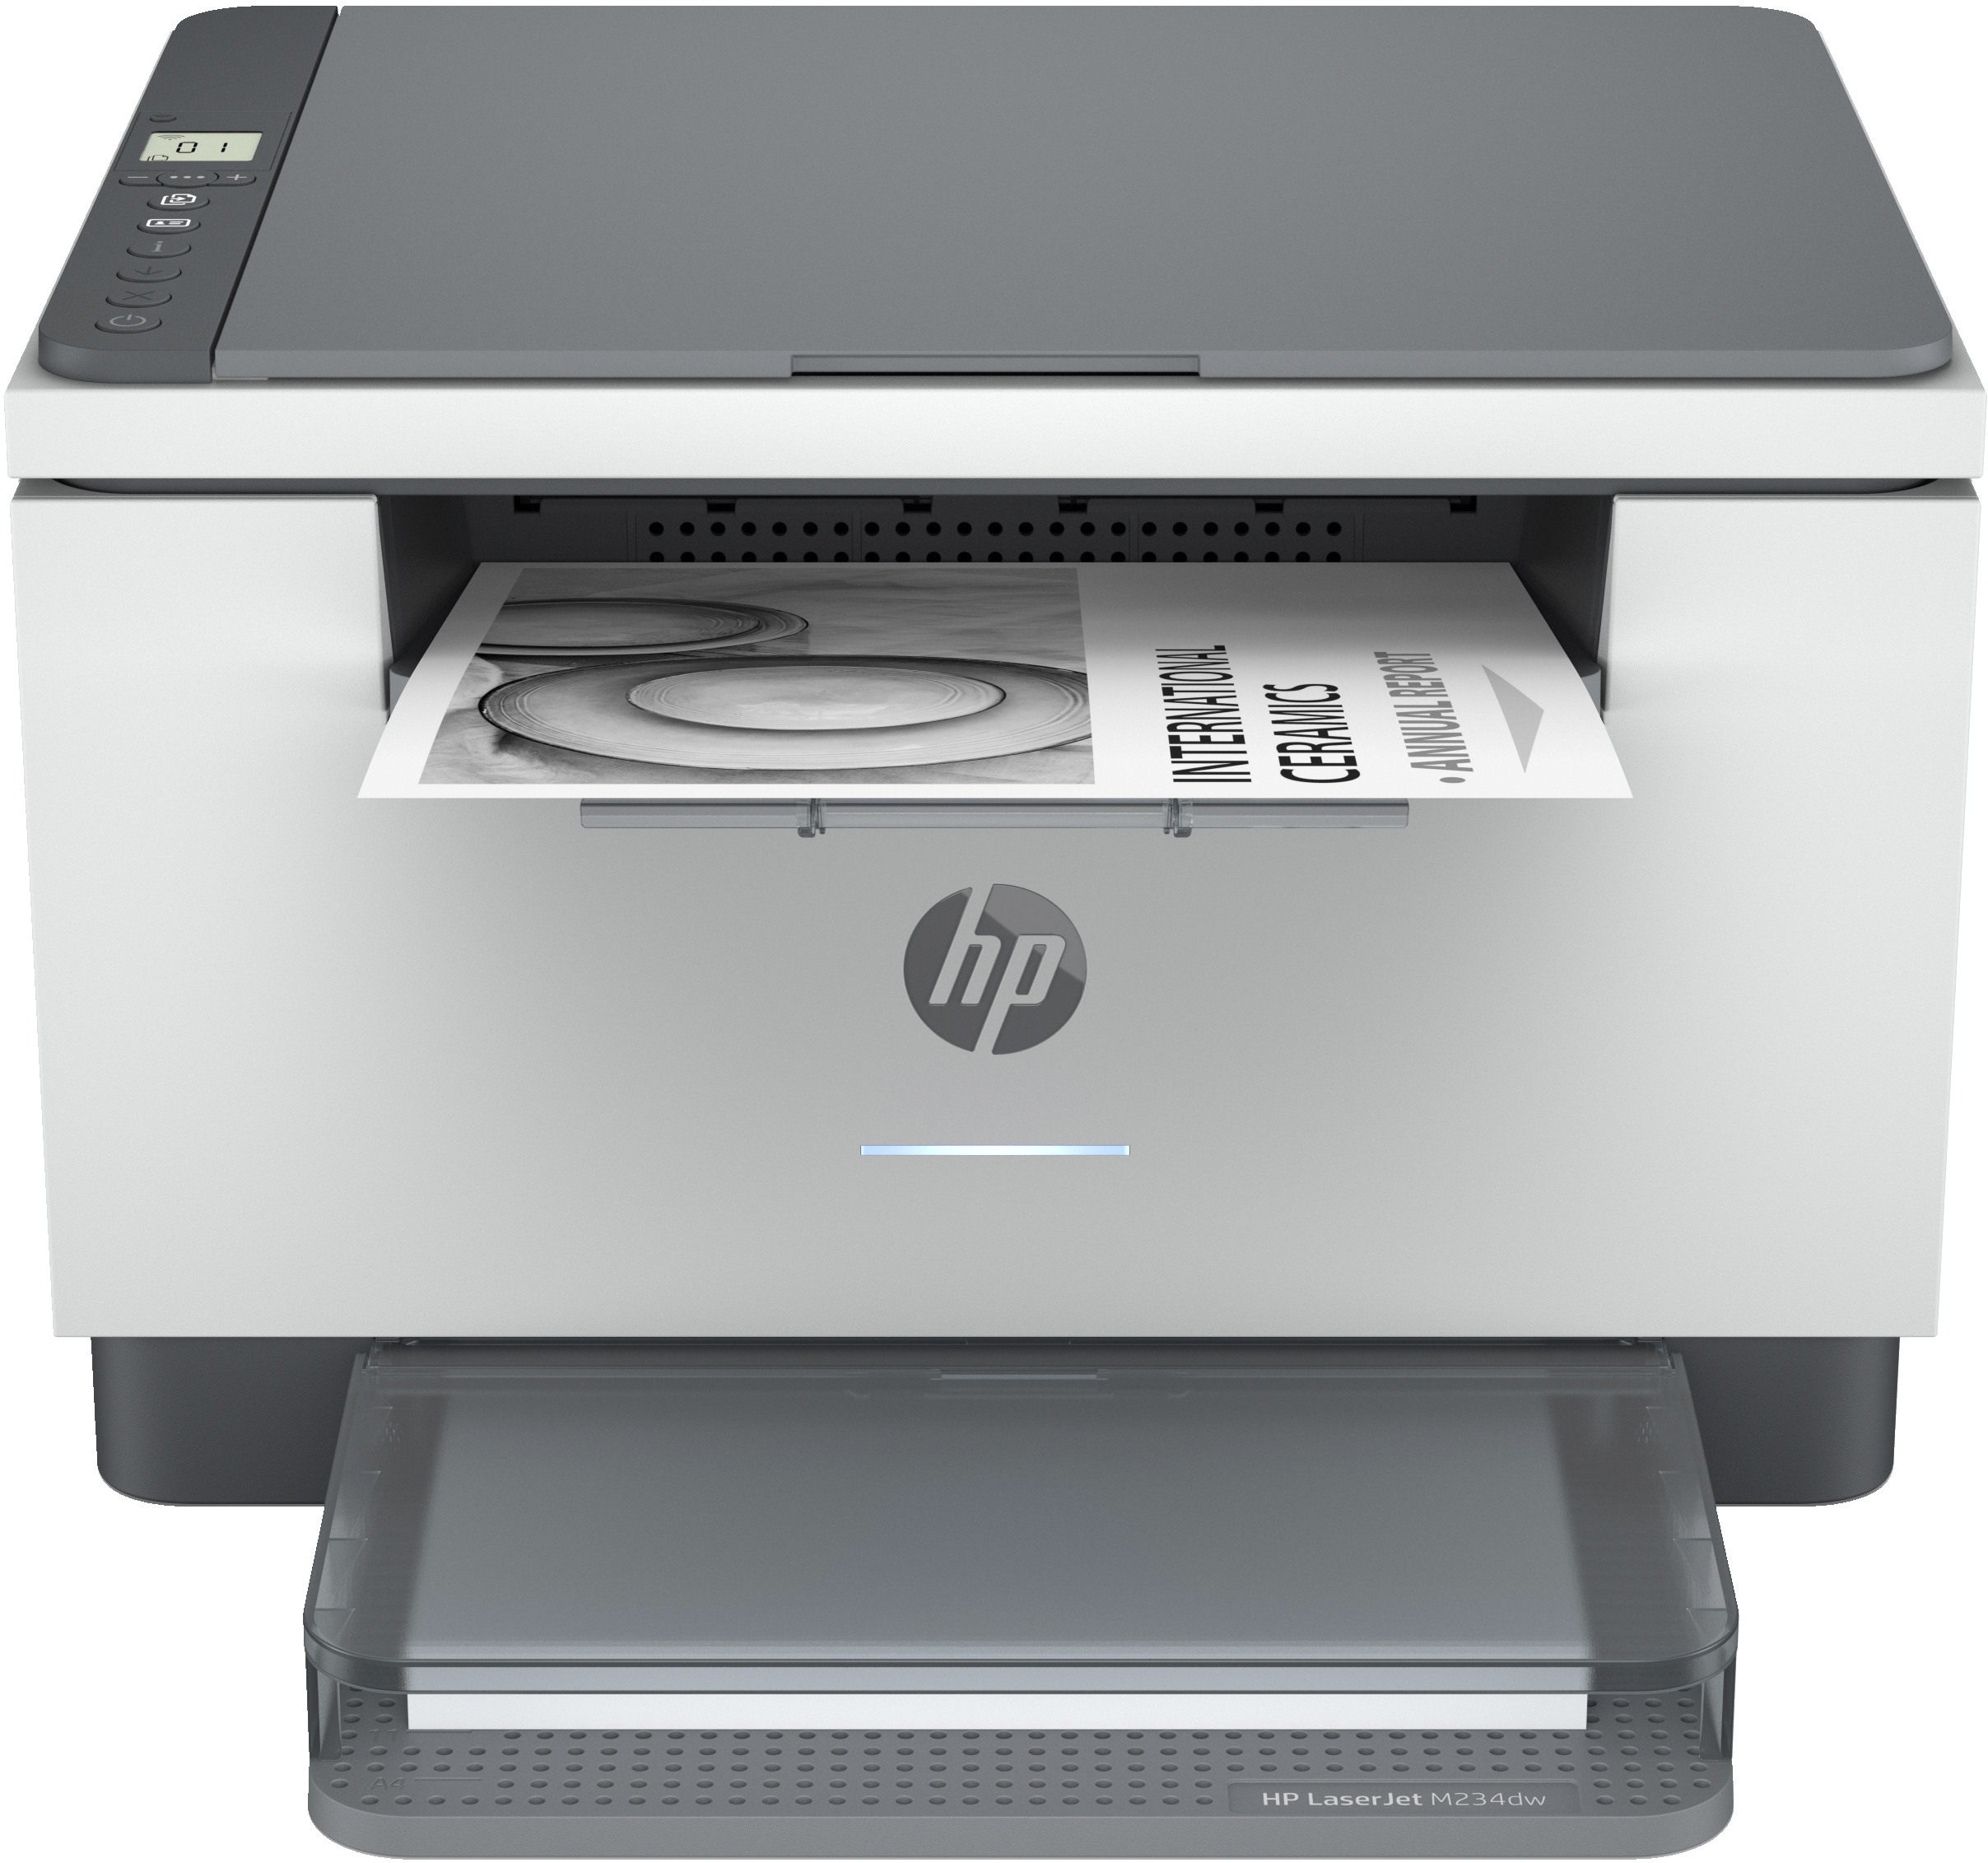 HP HP LaserJet MFP M234dw printer, Zwart-wit, Printer voor Kleine kantoren, Printen, kopi&#235;ren, scannen, Scannen naar e-mail; Scannen naar pdf